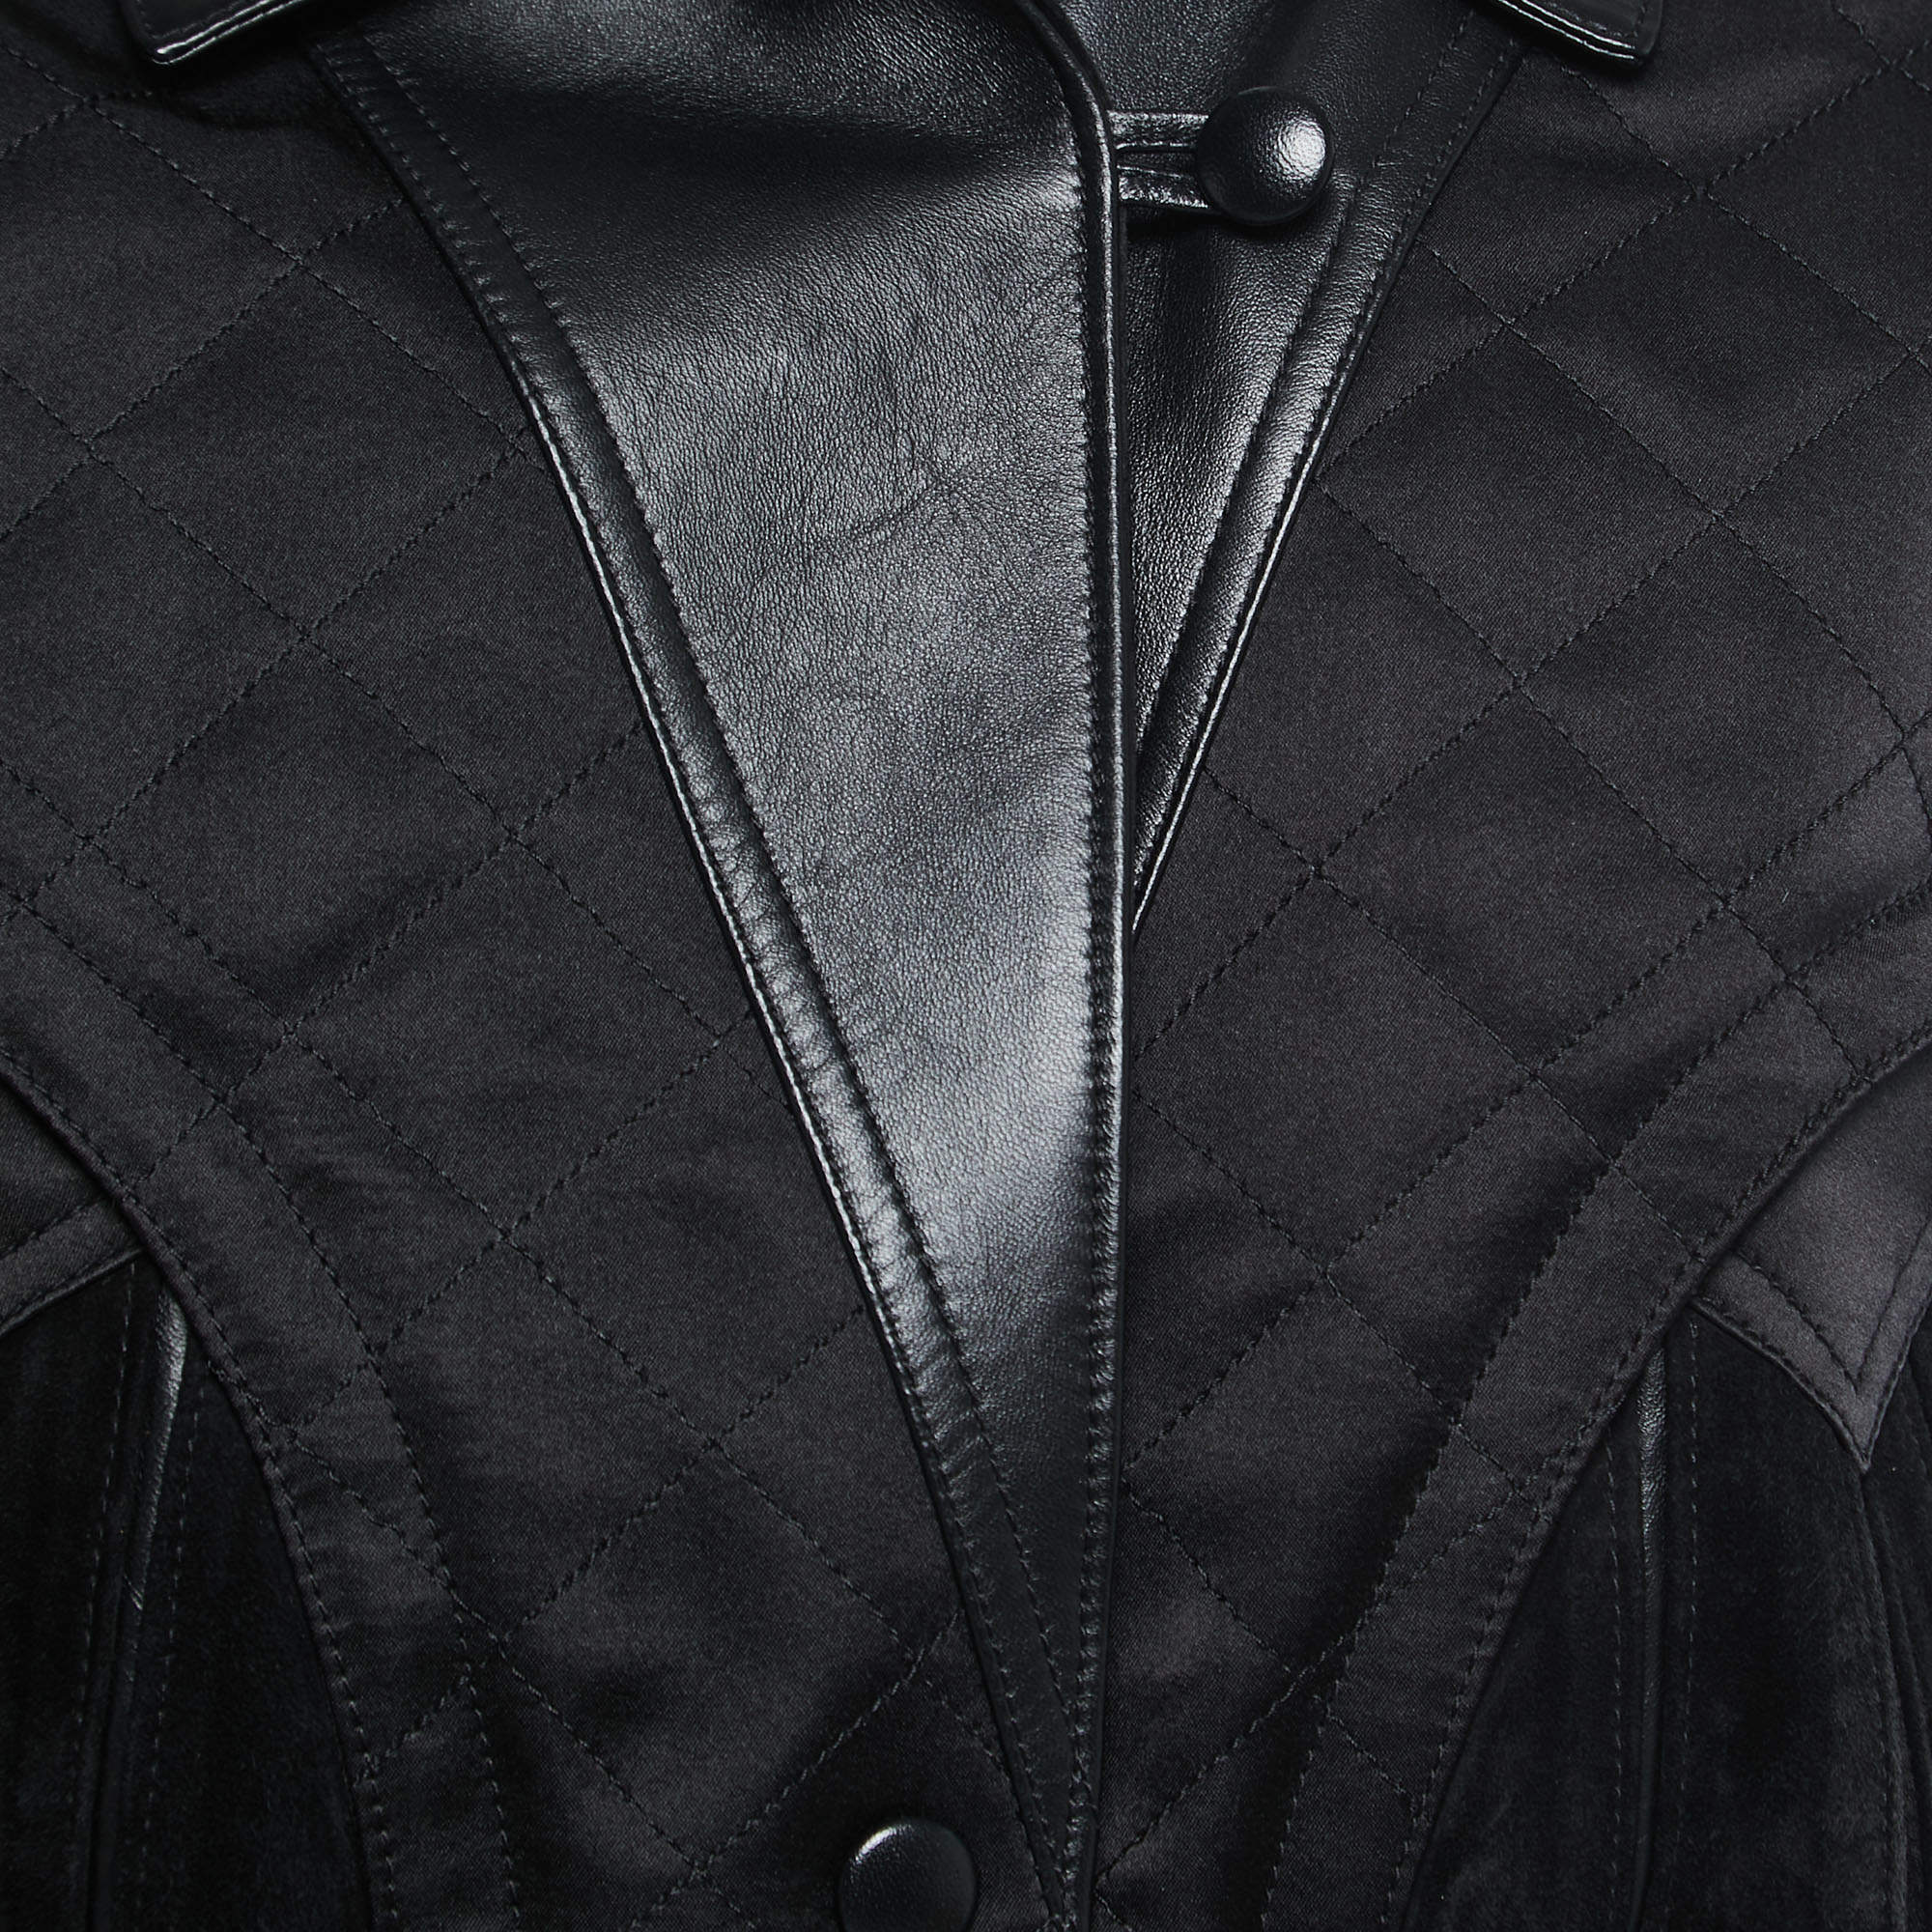 Louis Vuitton Black Leather & Silk Quilted Biker Jacket L Louis Vuitton